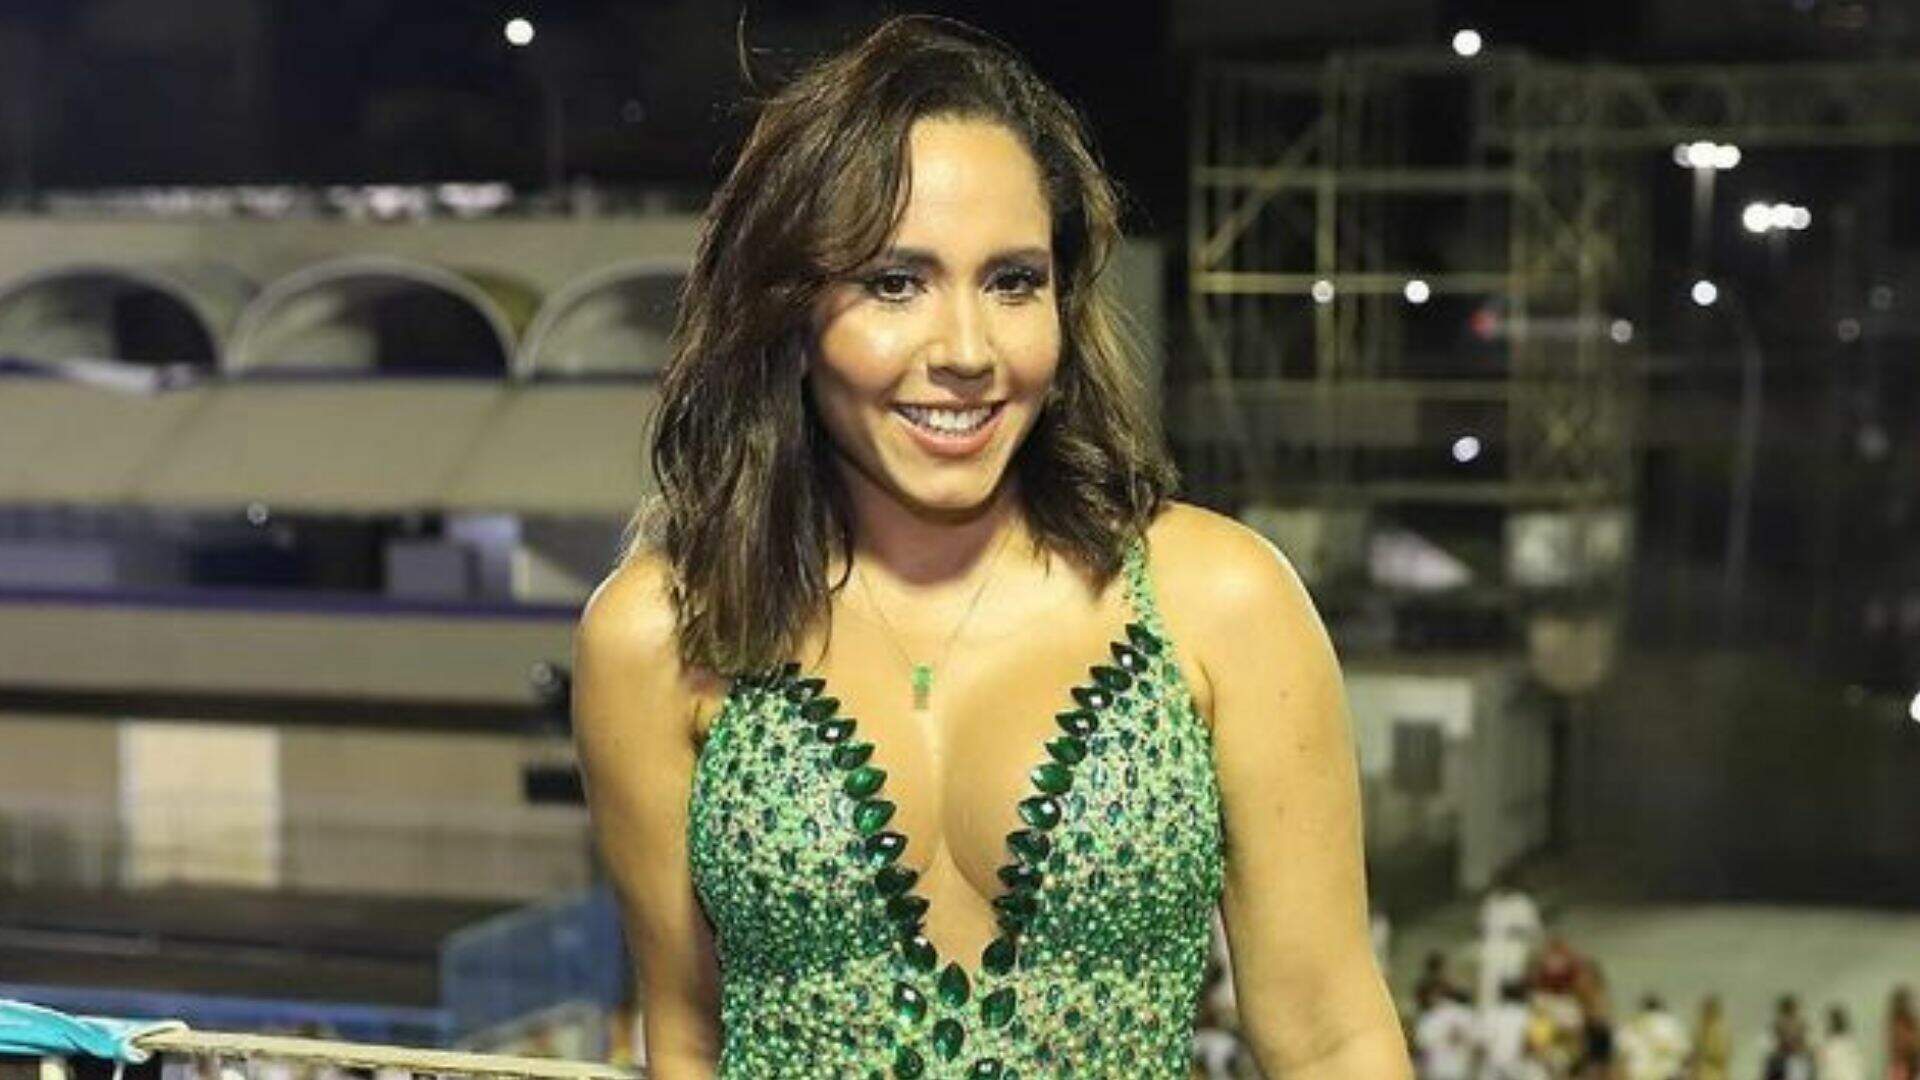 Pronta pro jogo do Brasil, Mulher Melão mostra qual lingerie escolheu para dar sorte - Metropolitana FM